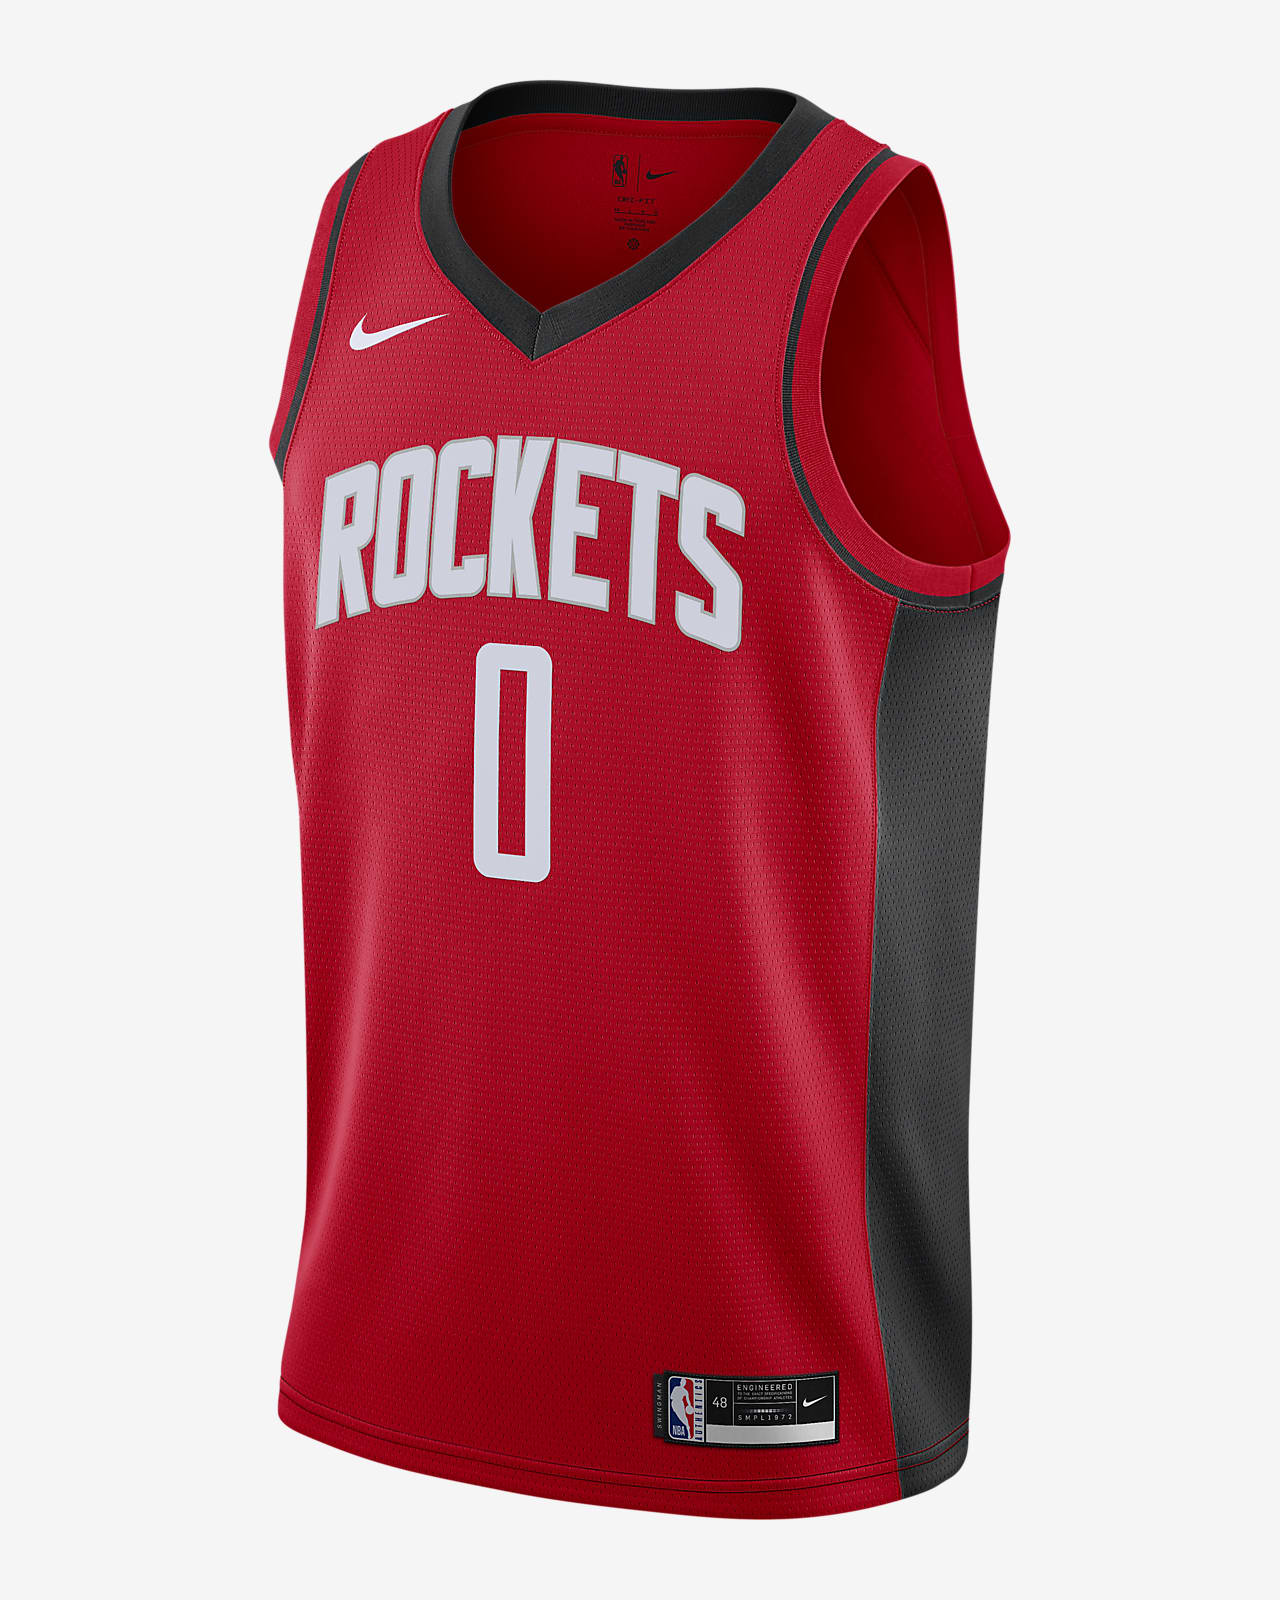 Casa menú sonriendo Camiseta Nike NBA Swingman Rockets Icon Edition 2020. Nike.com